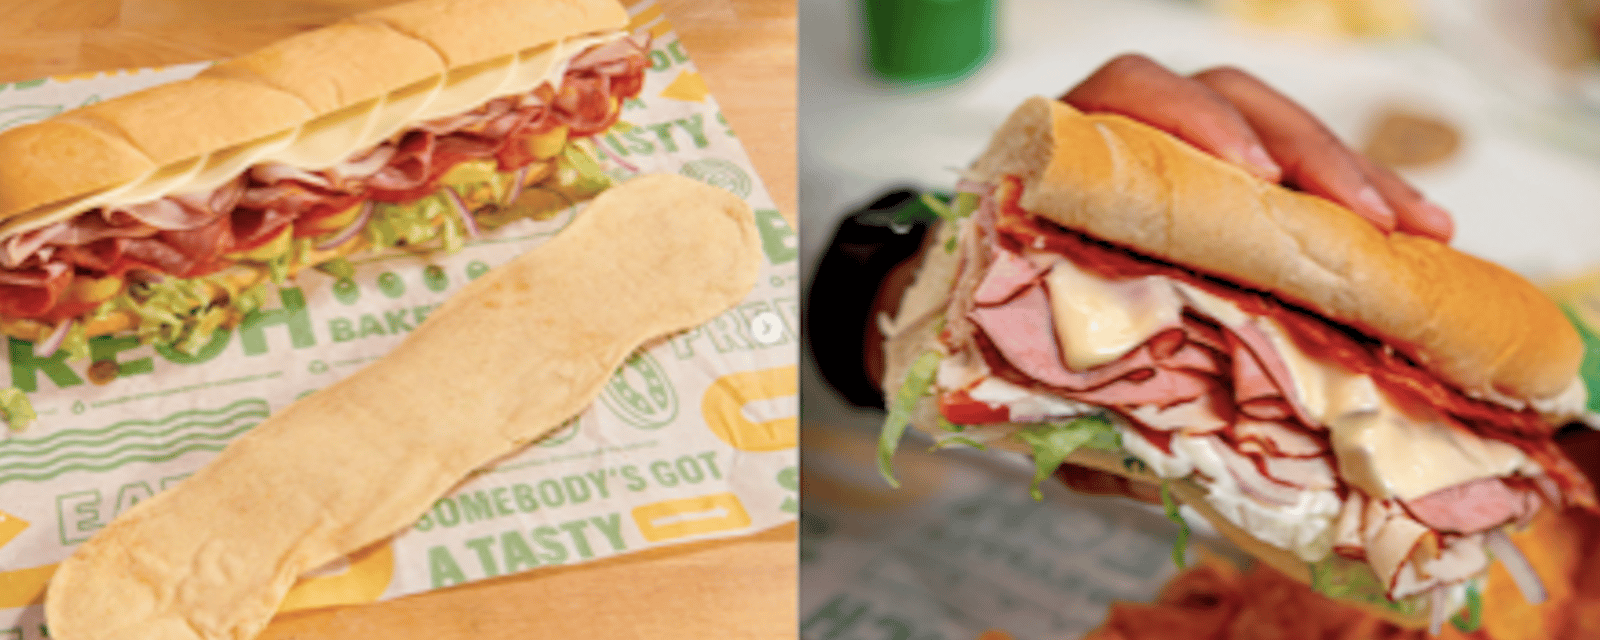 Subway met 14 nouveaux sandwichs à son menu